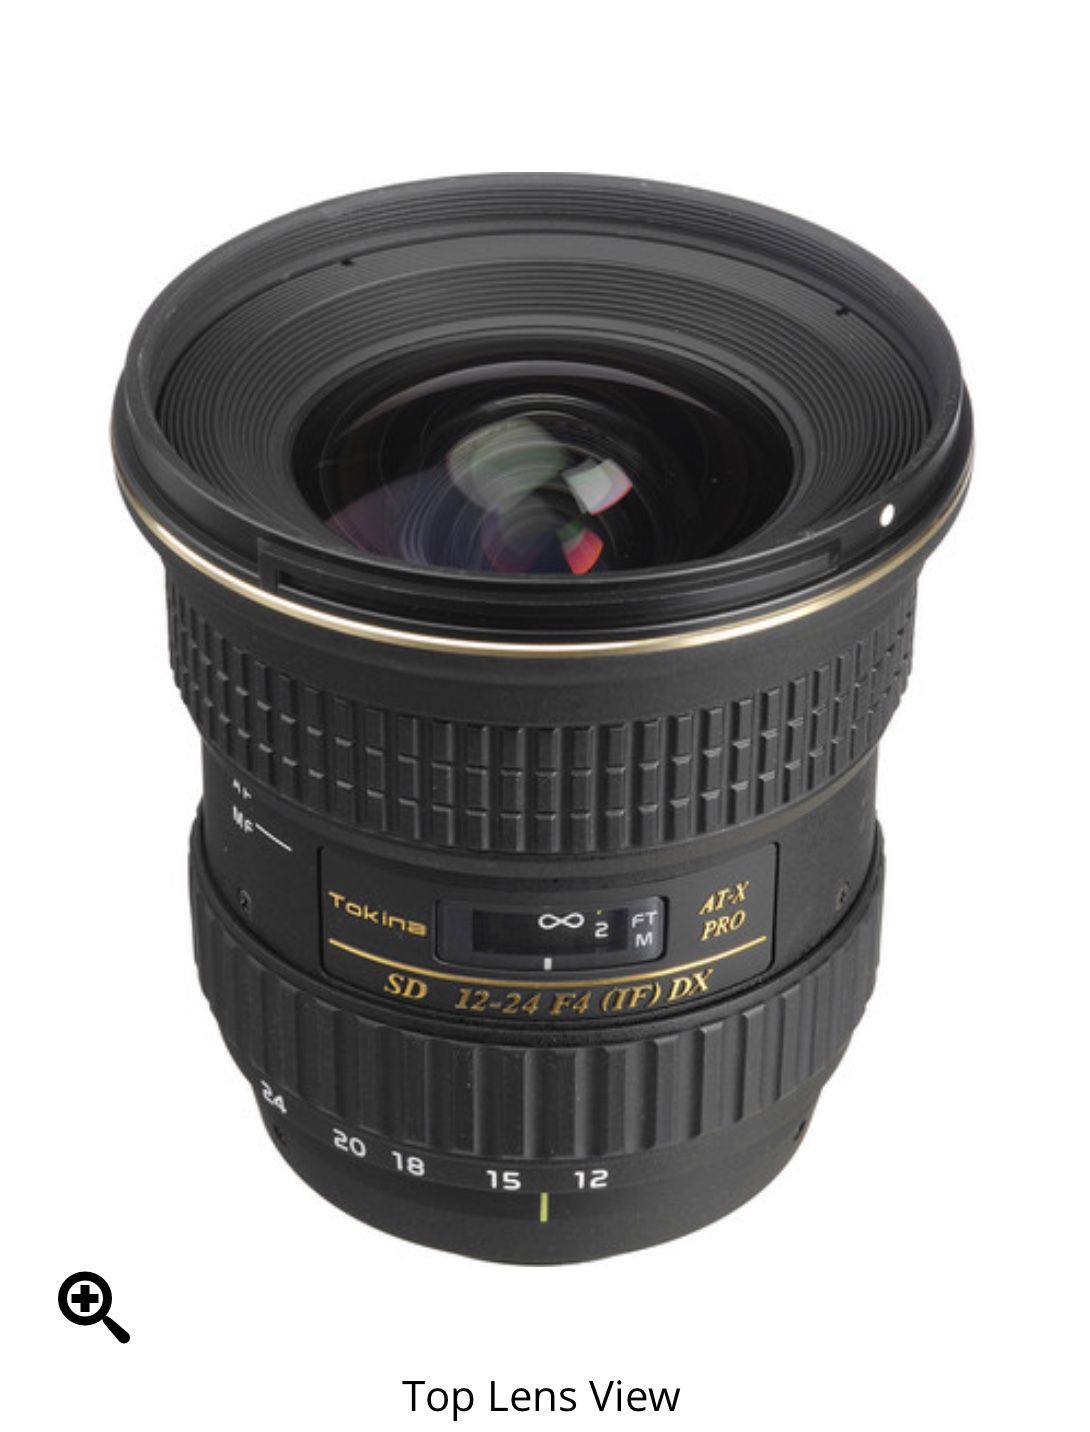 Tokina 12-24mm f/4 AT-X 124 AF Pro DX Lens